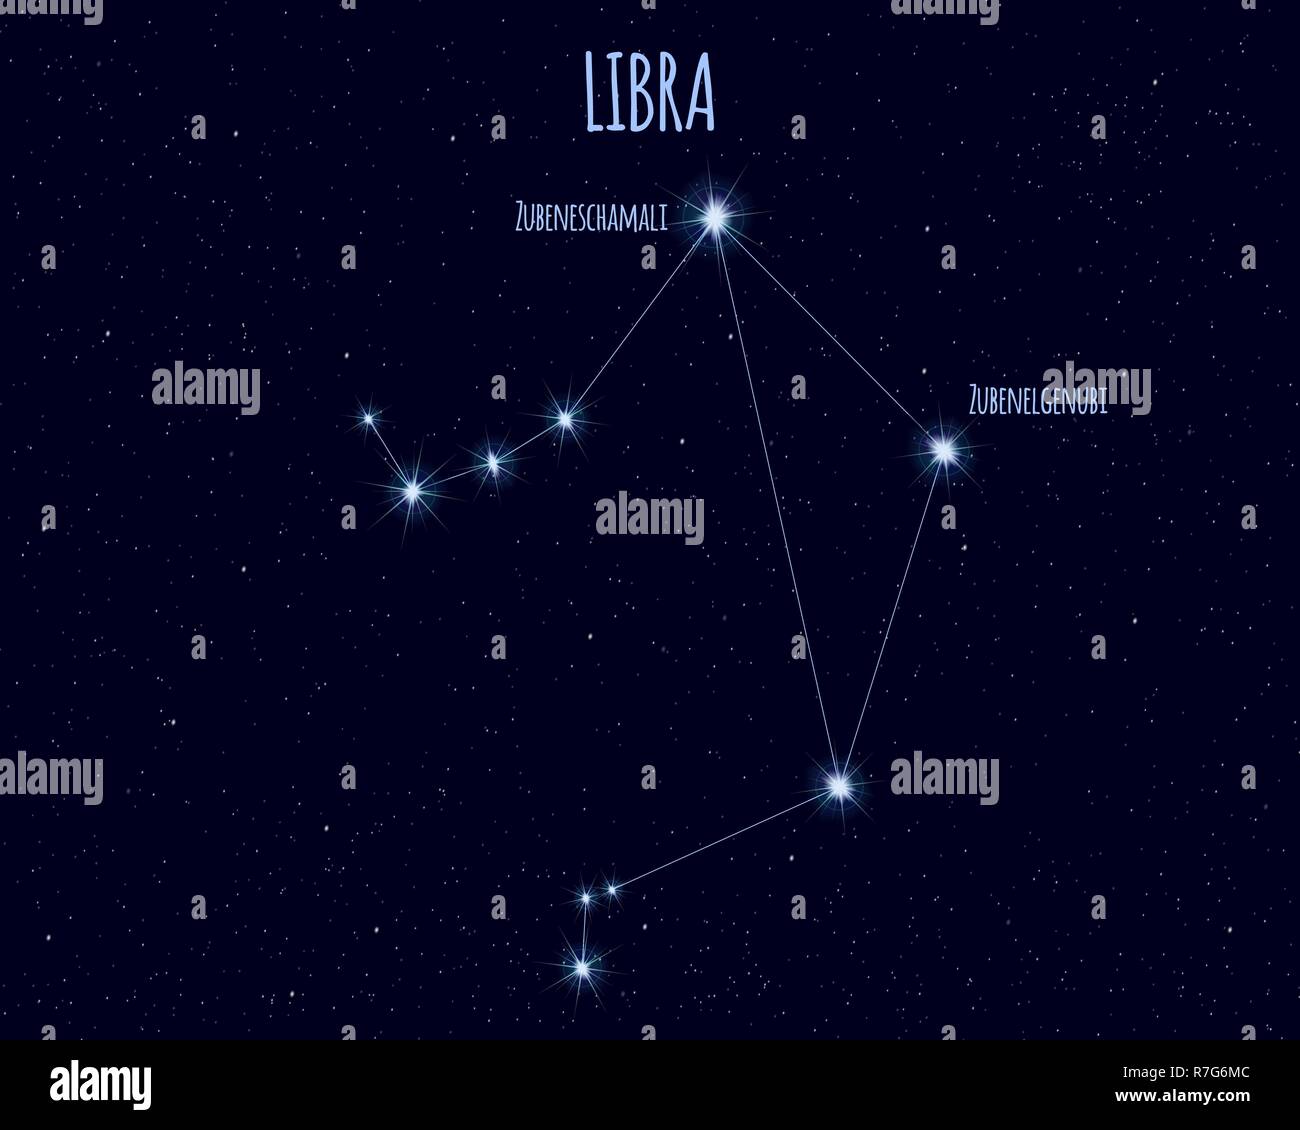 Libra (l'equilibrio) costellazione, illustrazione vettoriale con i nomi delle stelle di base contro il cielo stellato Illustrazione Vettoriale